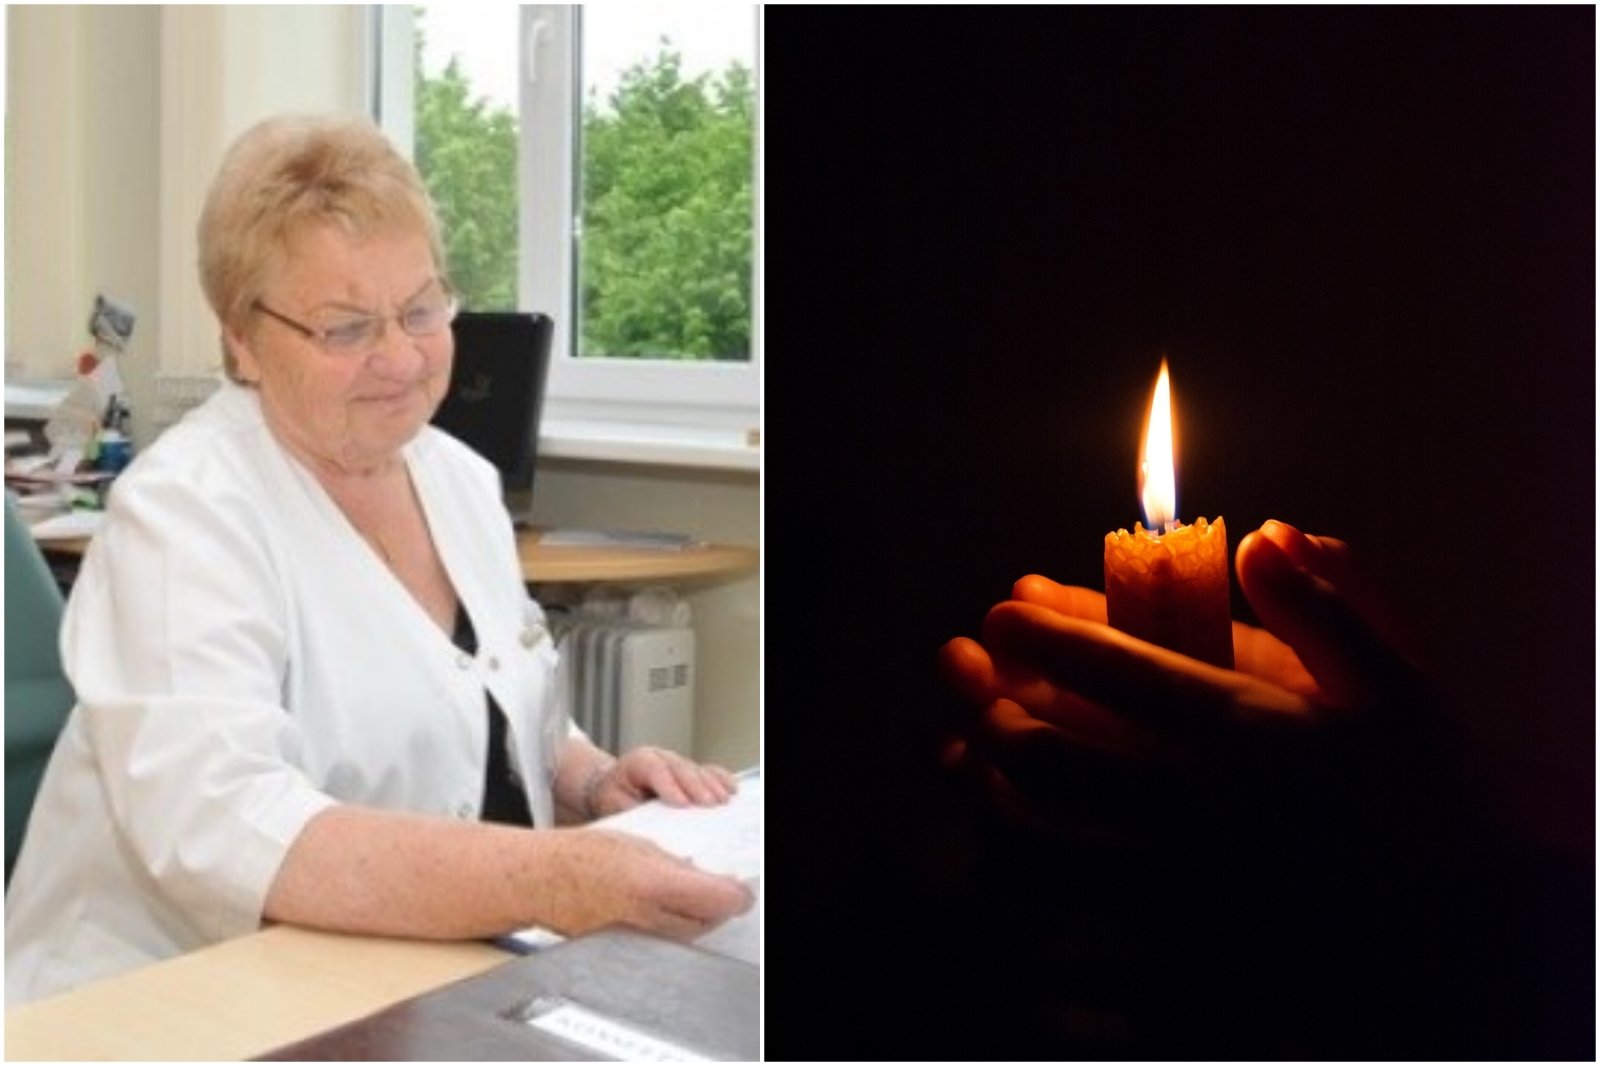 Det er et tap i det medisinske samfunnet i Klaipėda: en kardiolog elsket av mange har gått bort